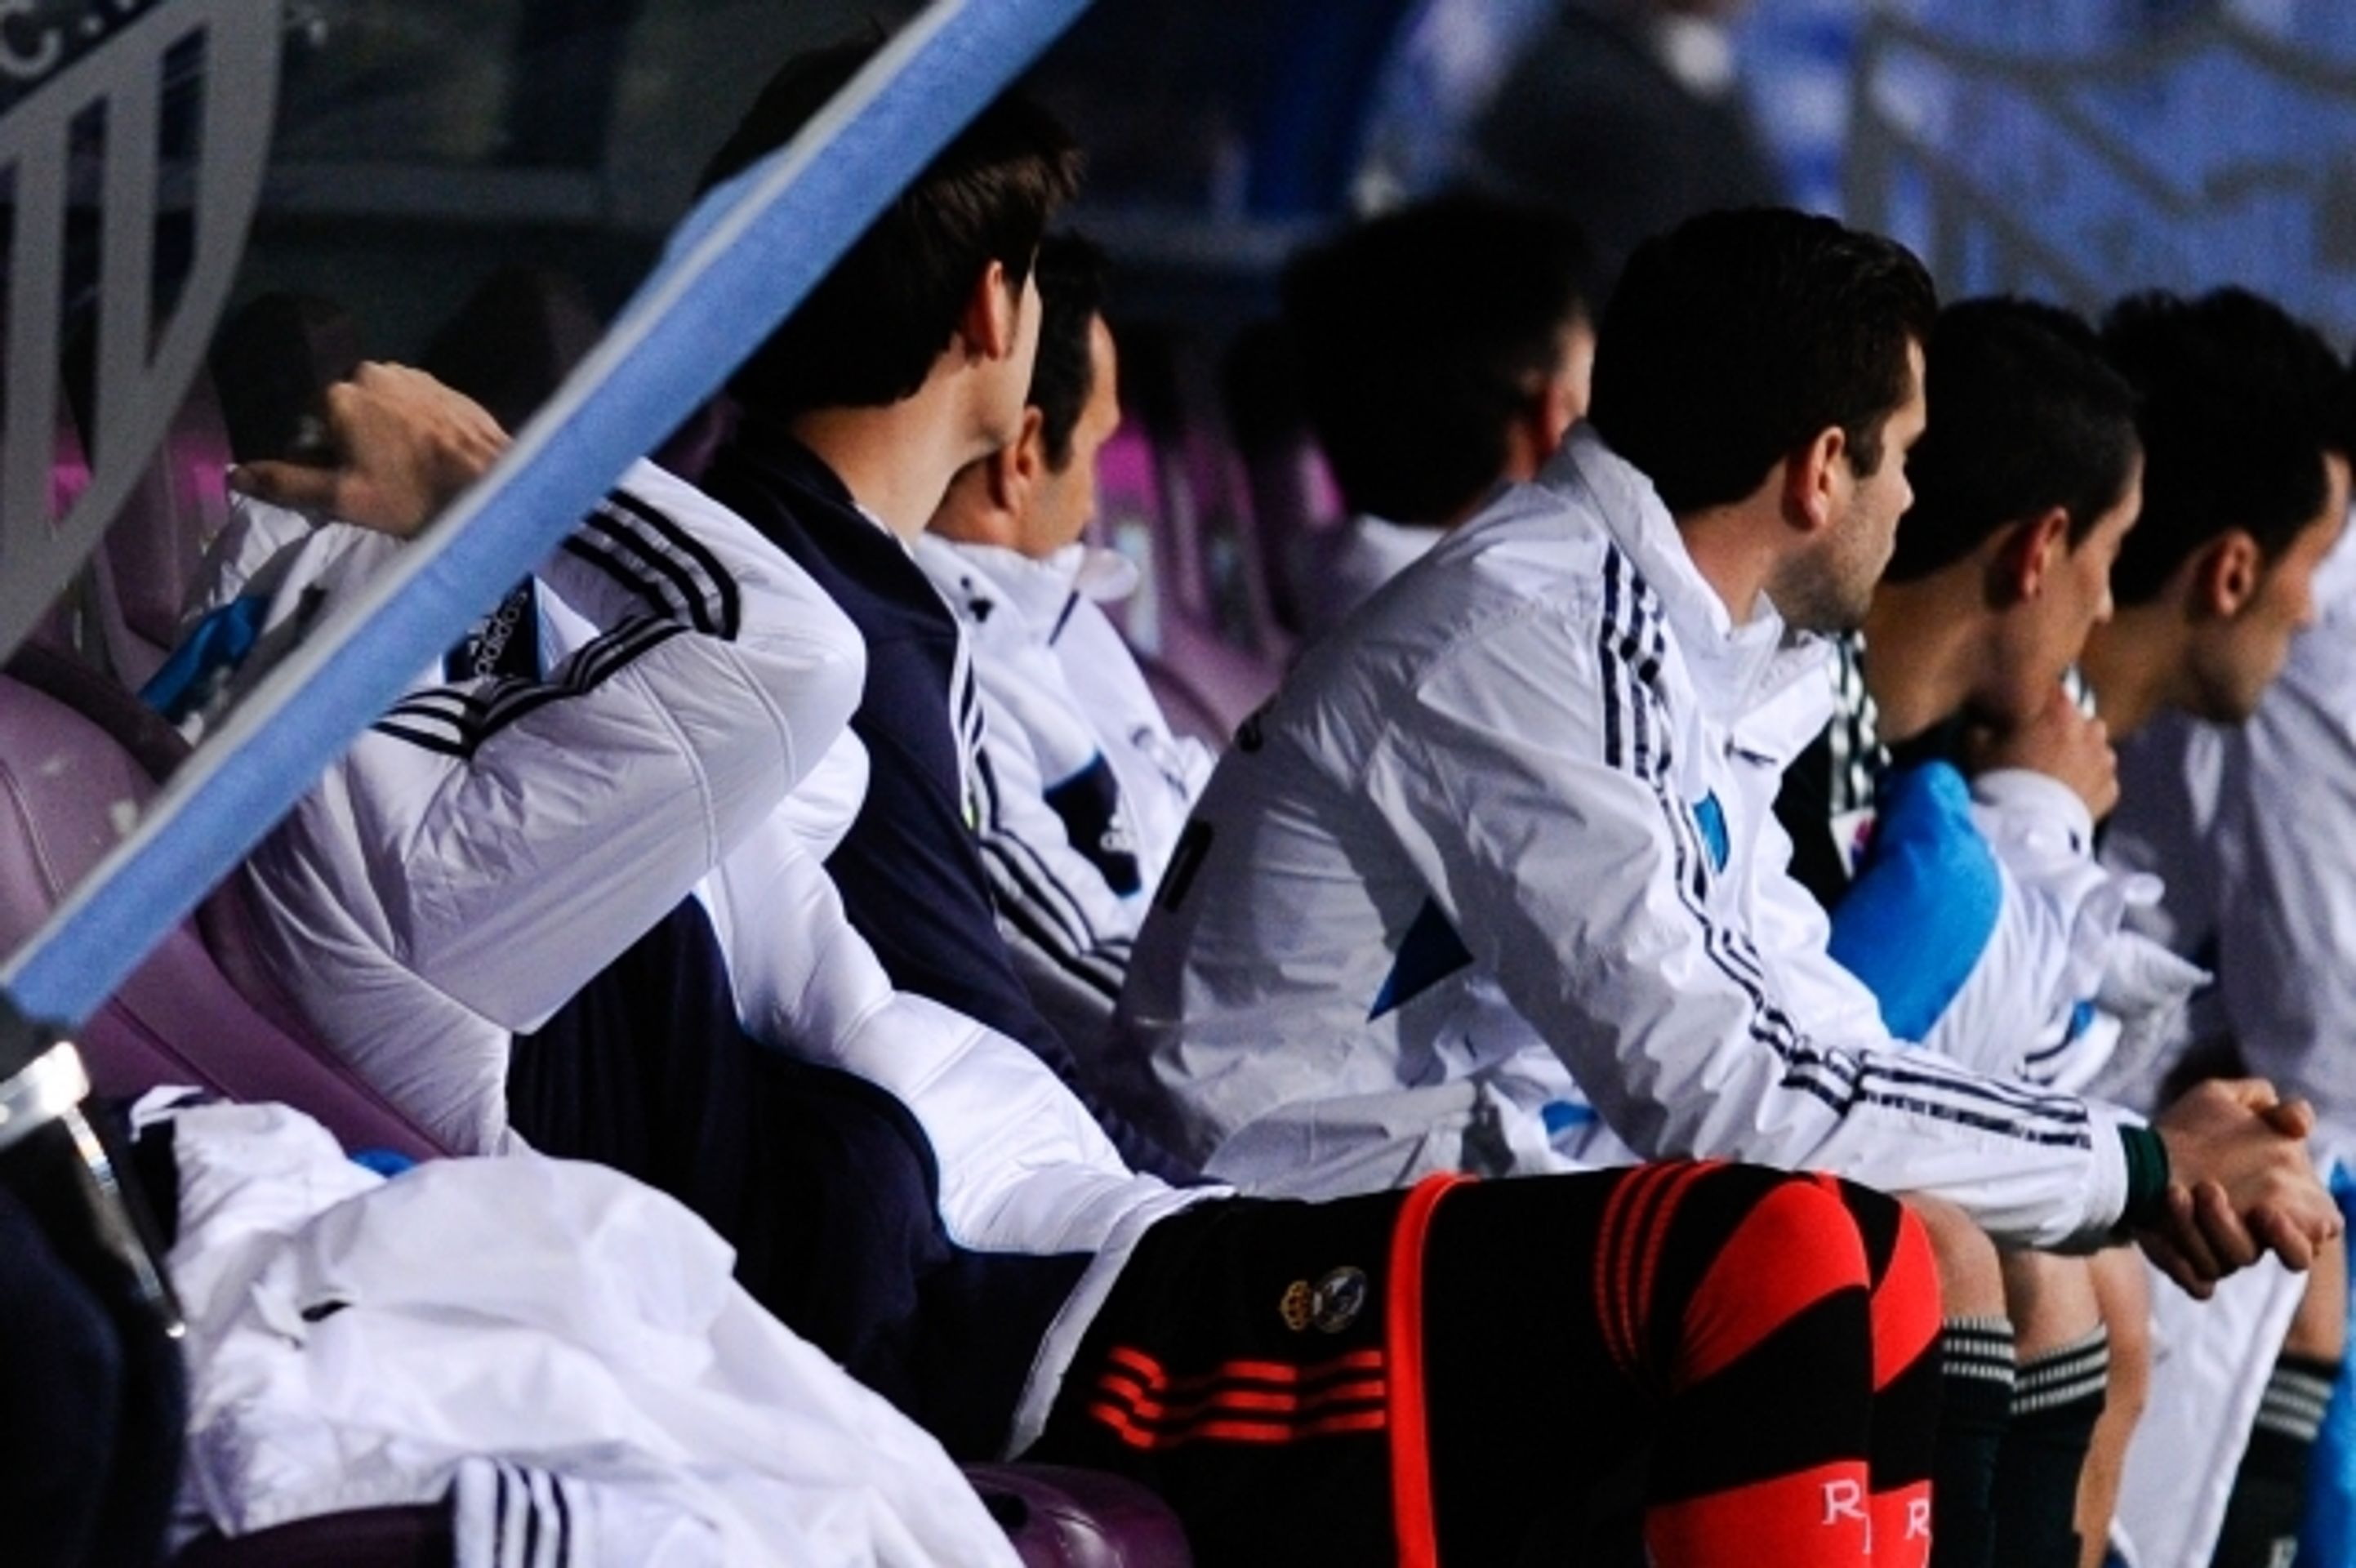 Iker Casillas a jeho reakce na lavičce Realu - 4 - GALERIE: Iker Casillas na lavičce Realu (3/6)